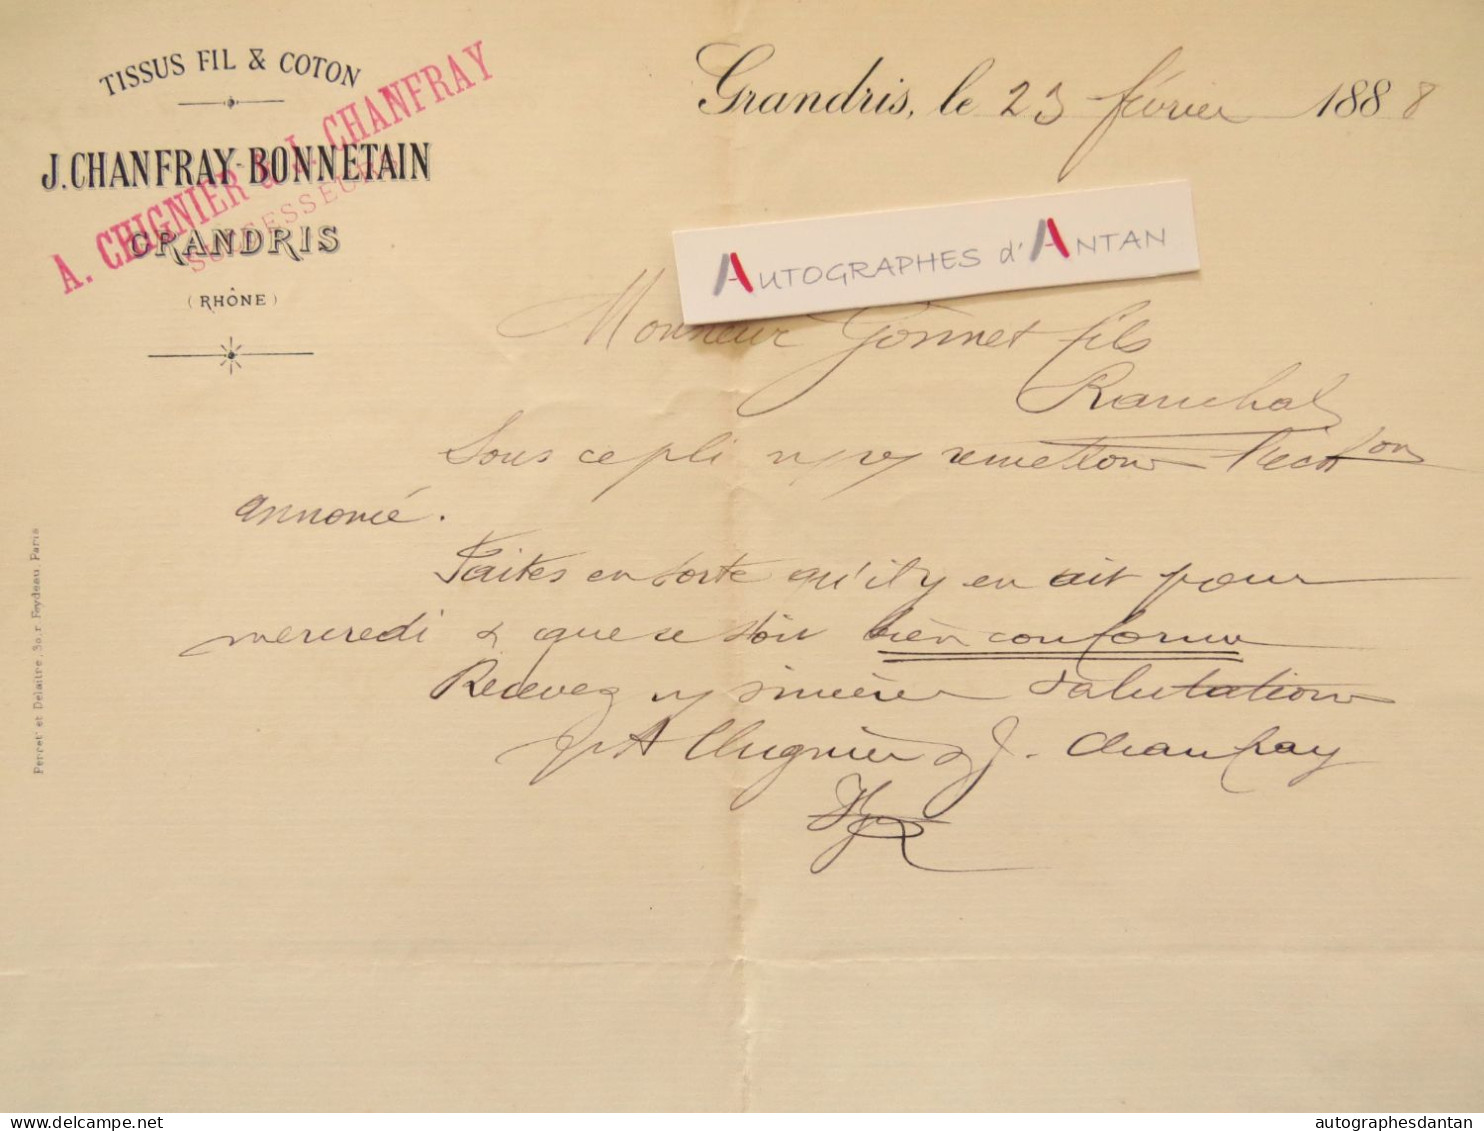 ● GRANDRIS 1888 - J. CHANFRAY BONNETAIN - Tissus Fil & Coton - Lettre Commerciale Gonnet Ranchal Rhône - Textile & Clothing